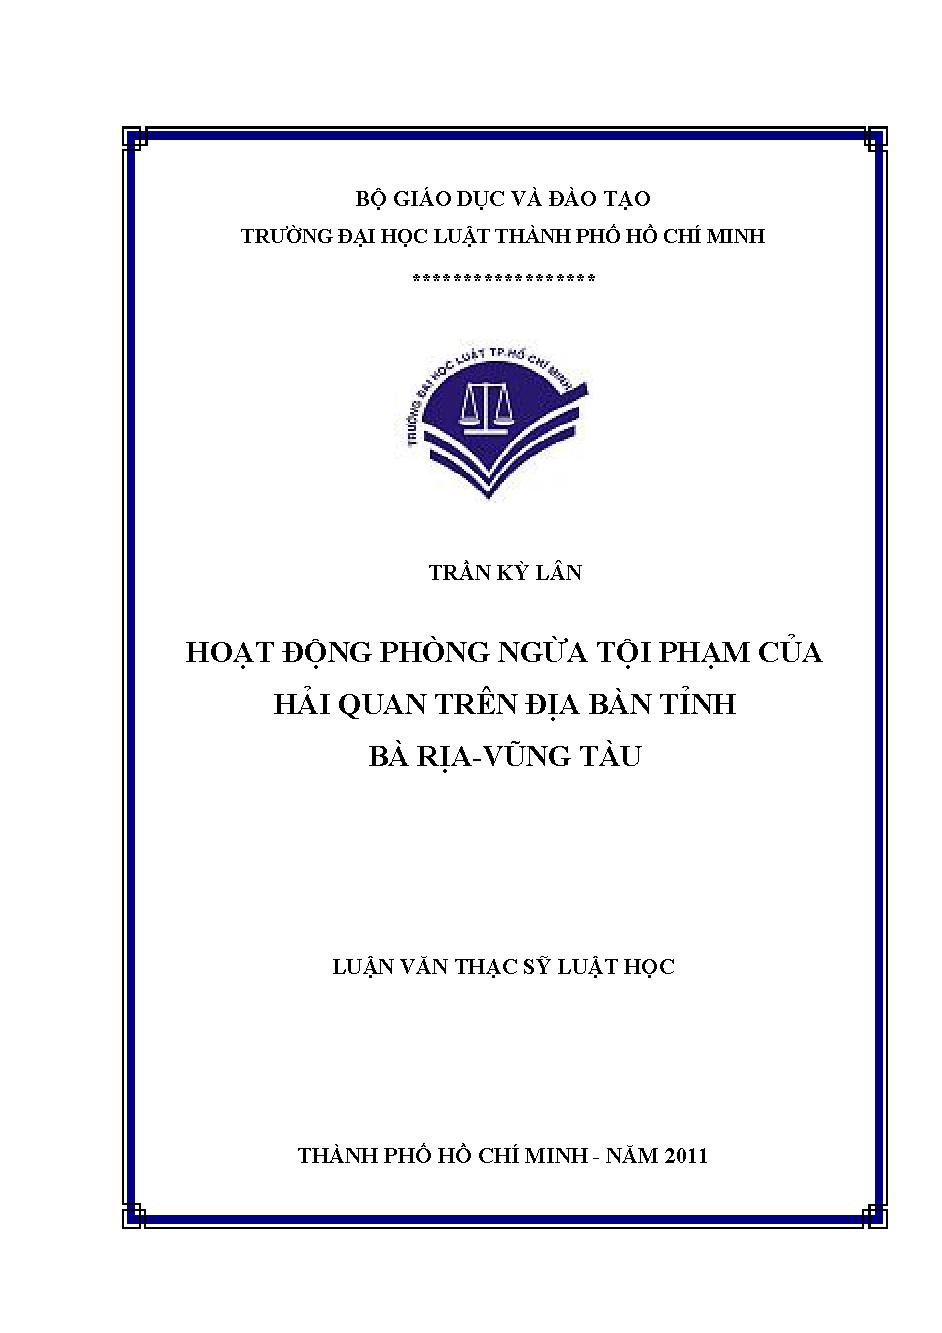 Hoạt động phòng ngừa tội phạm của Hải quan trên địa bàn tỉnh Bà Rịa - Vũng Tàu